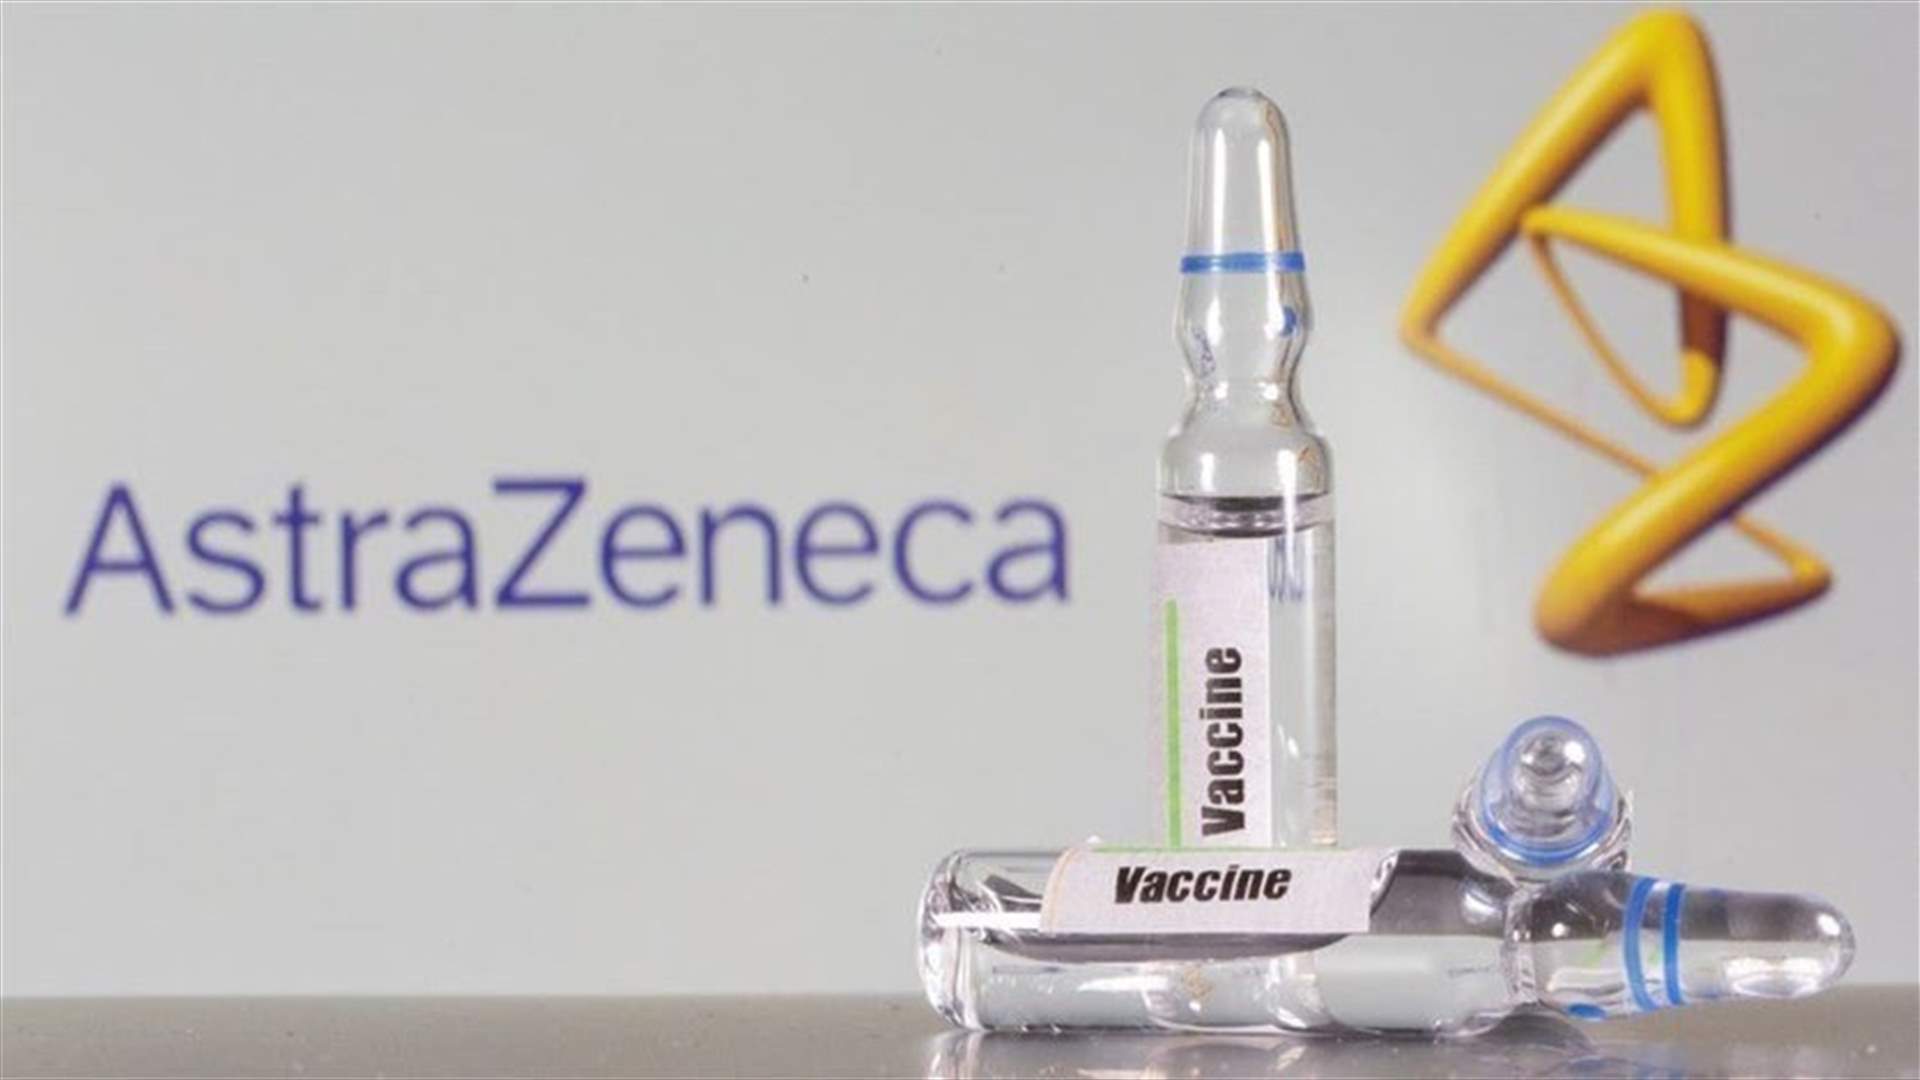 الهند ترصد 26 حالة نزيف وتجلط محتملة بعد التطعيم بلقاح أسترا زينيكا